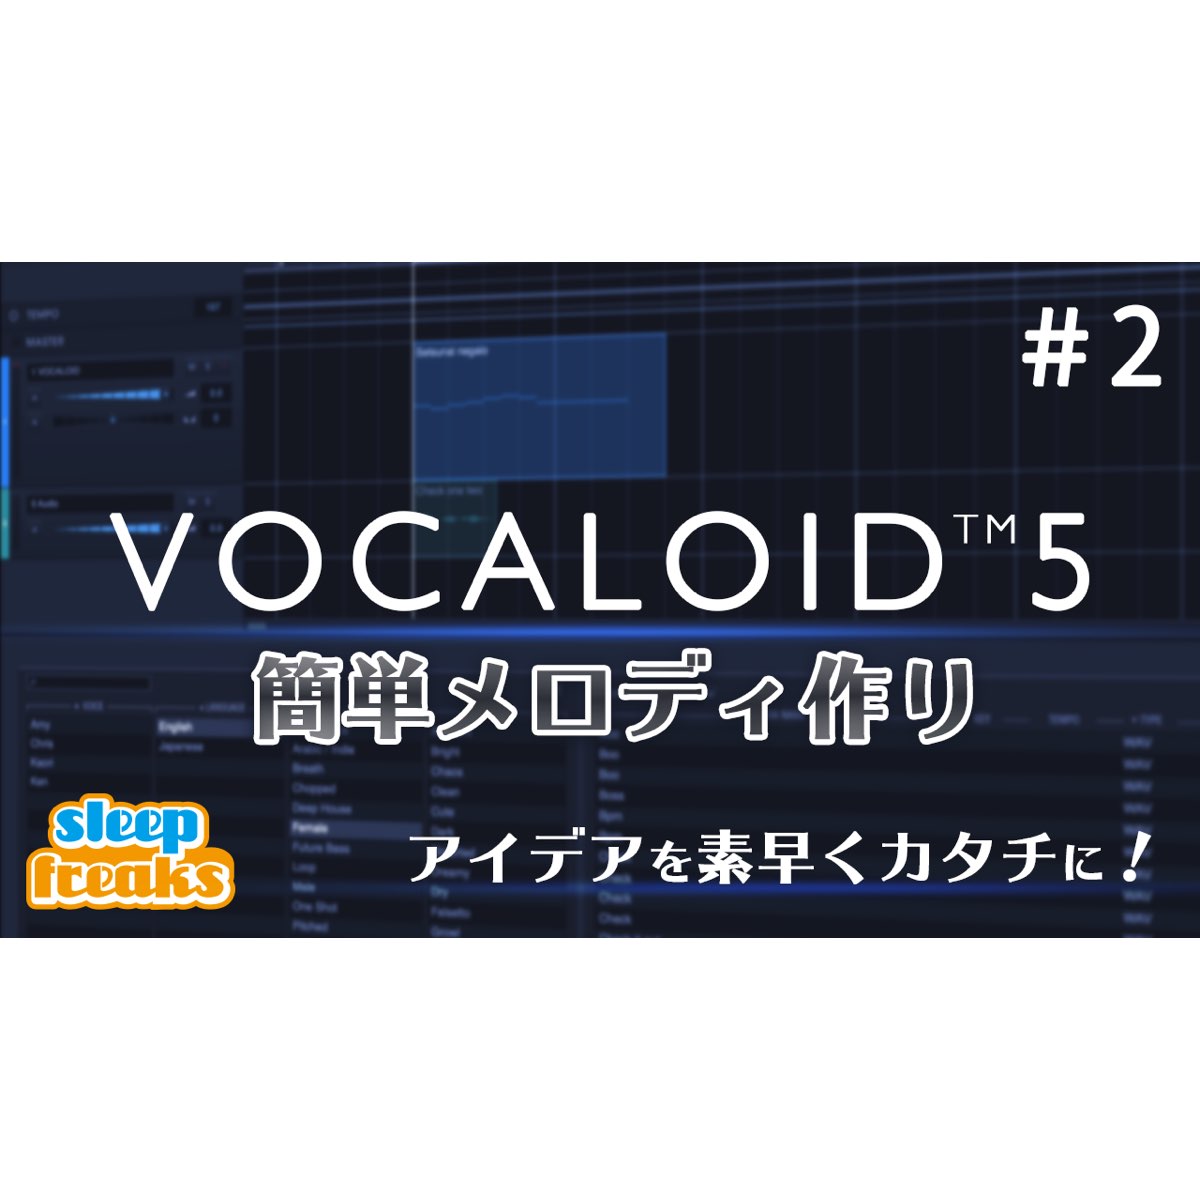 Yamaha Vocaloid 5 使い方 フレーズ機能とパートのエディット